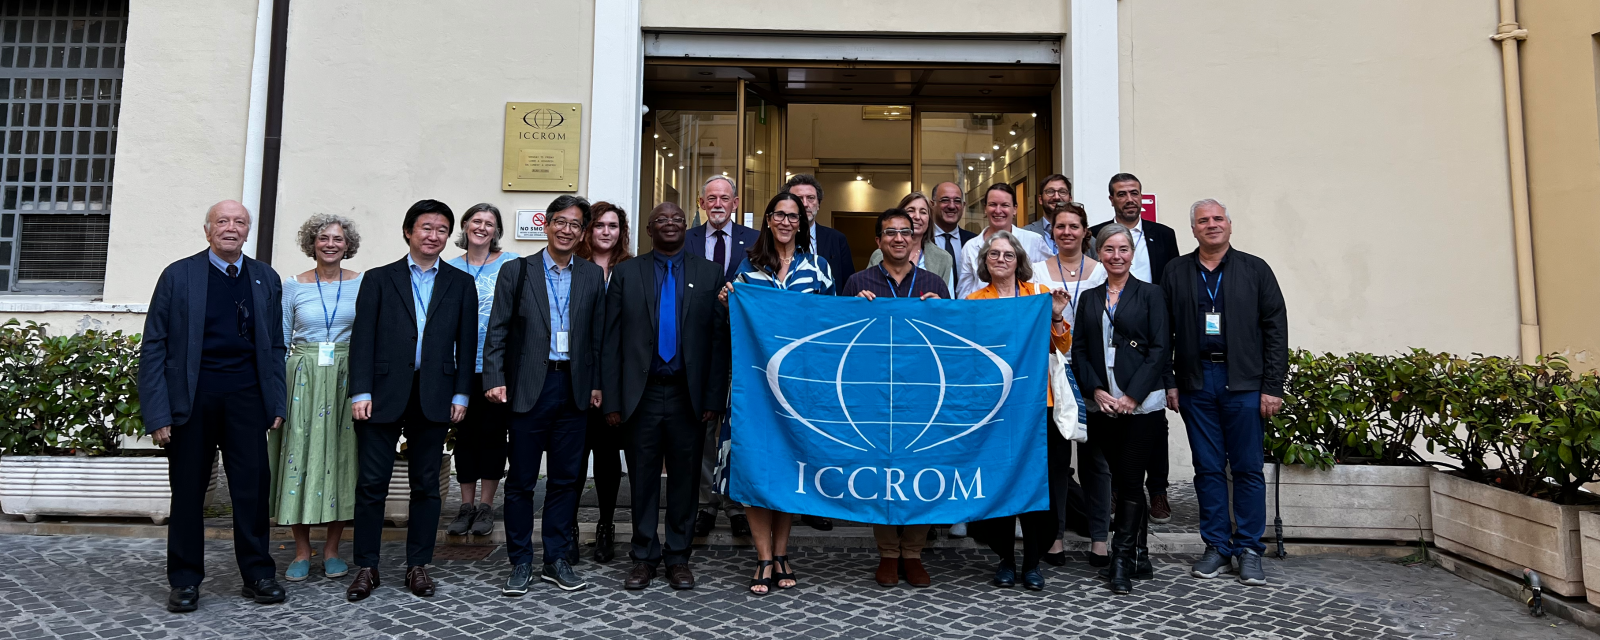 اجتمع المجلس التنفيذي لإيكروم في روما مرة أخرى